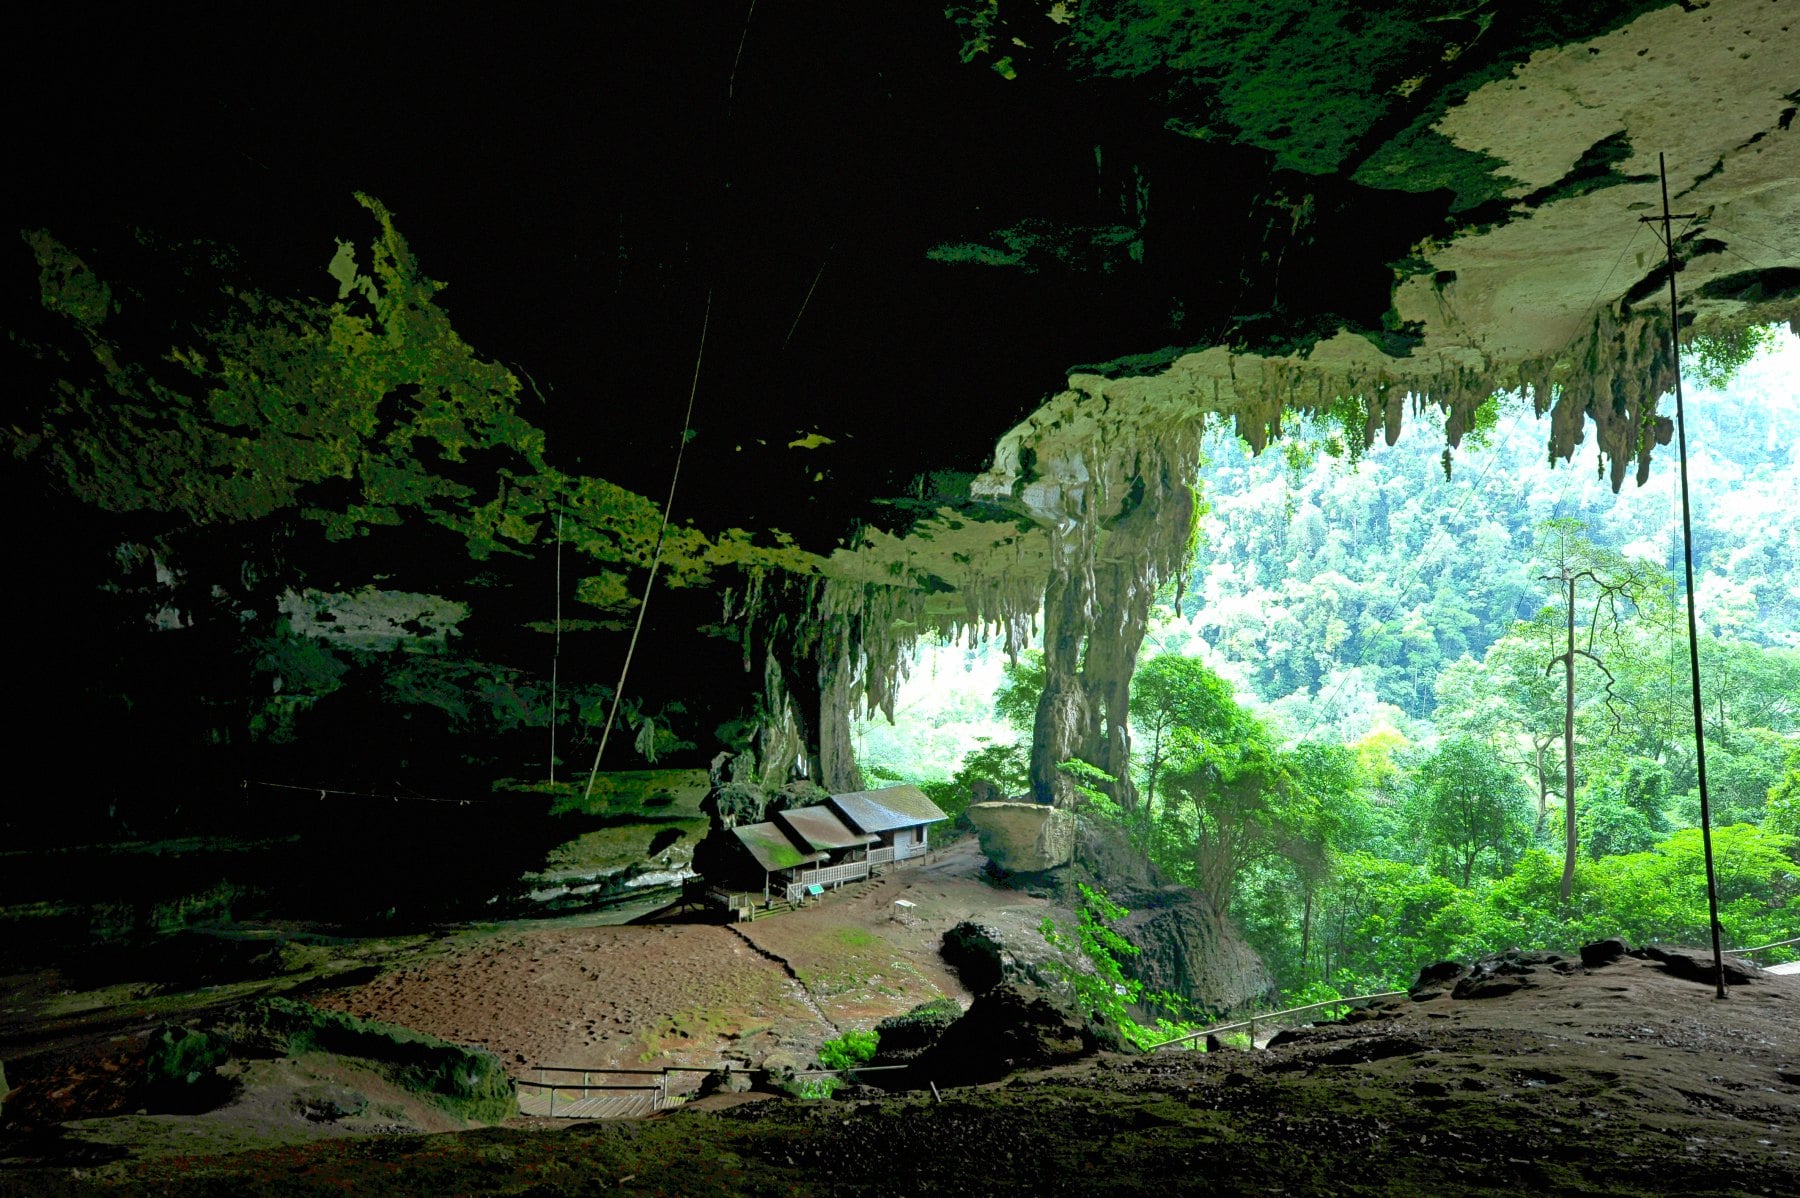 Niah National Park, Sarawak